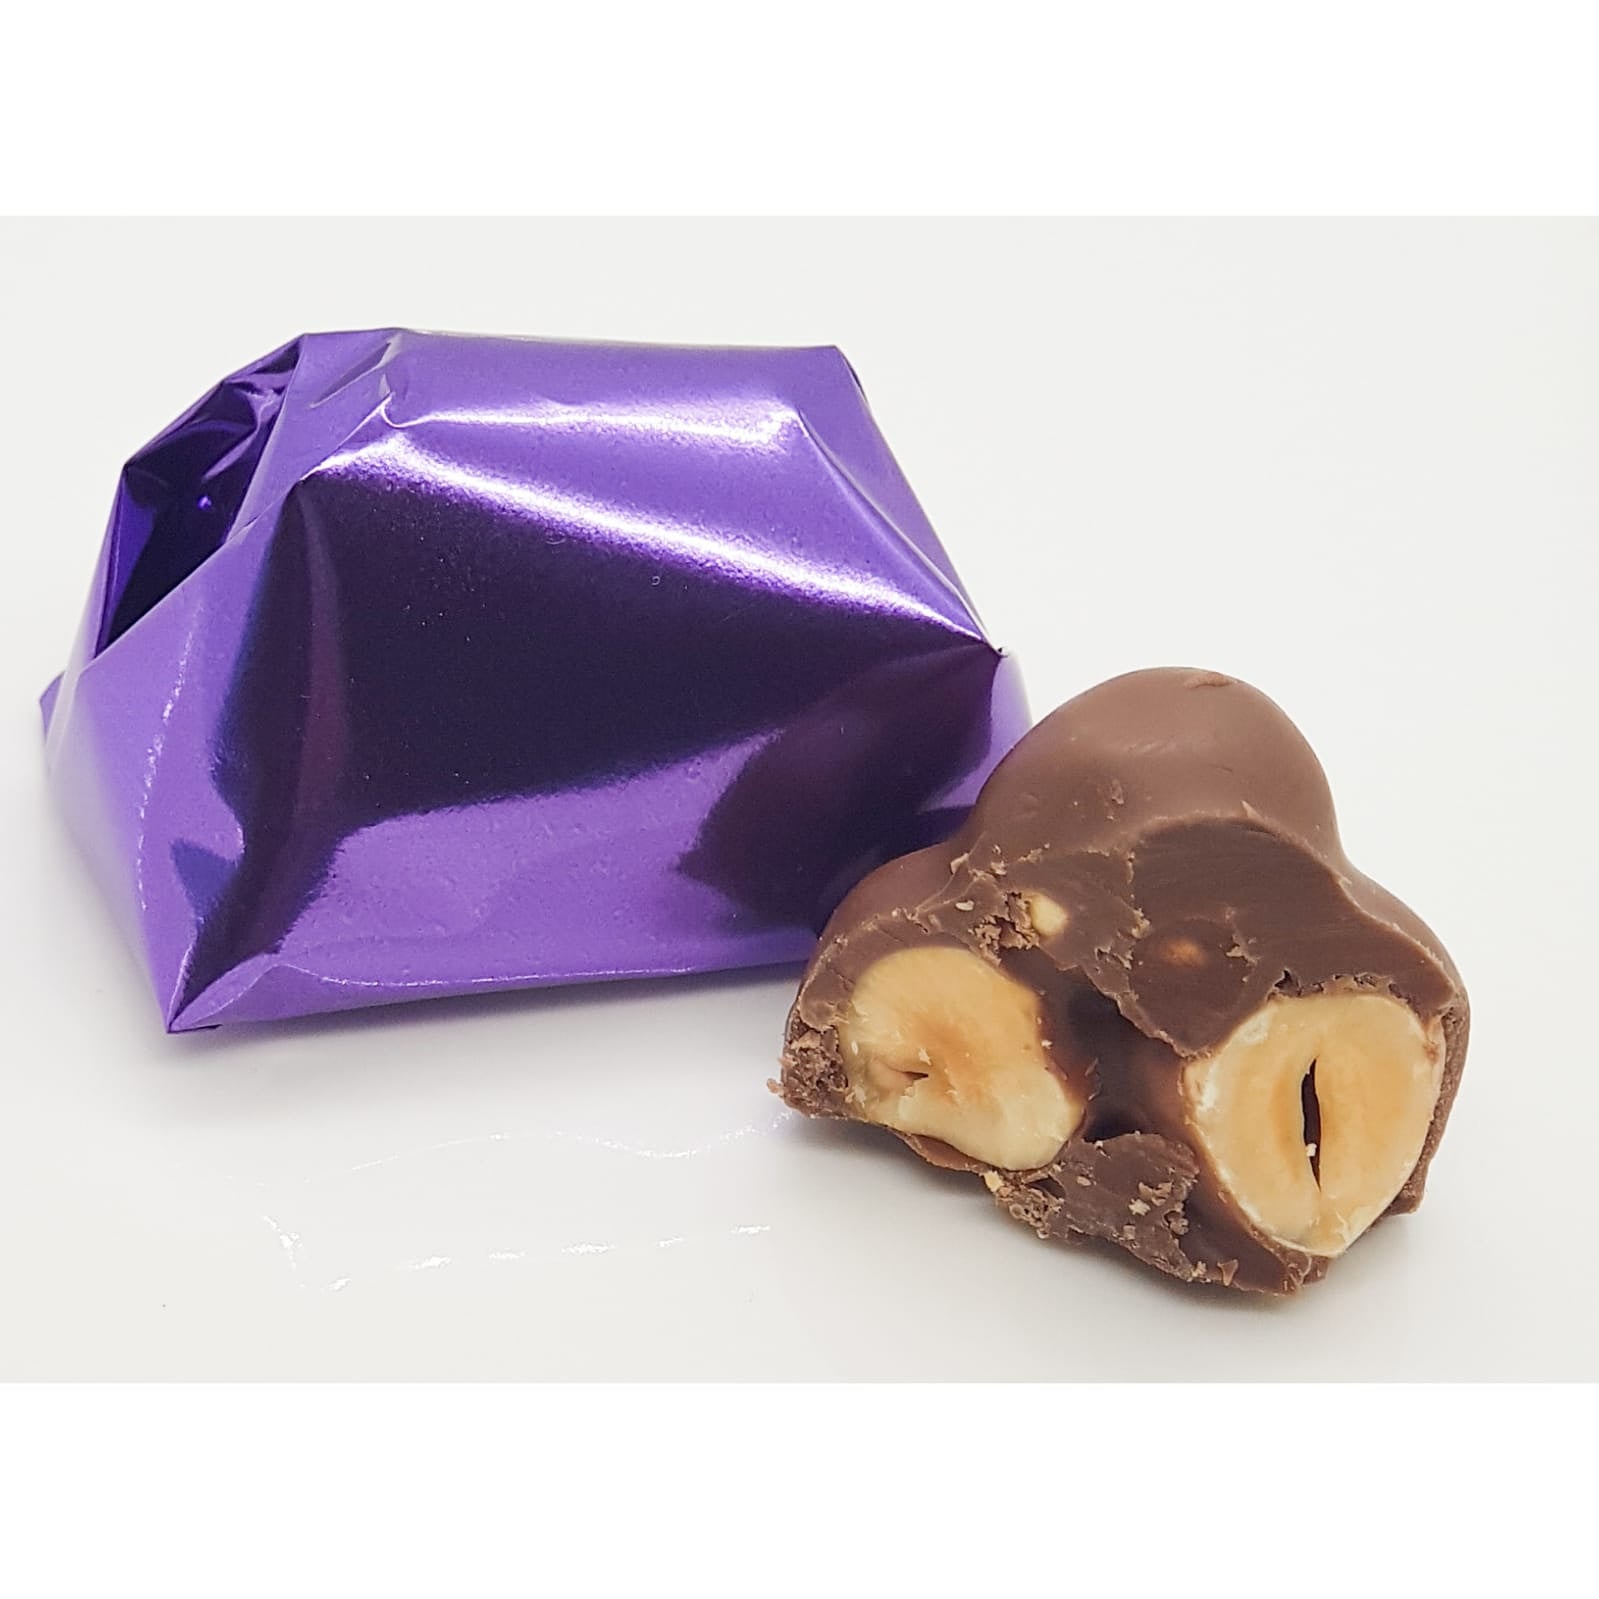 Chocolate Roche Hazelnut/شوكولا روشيه بندق حلو